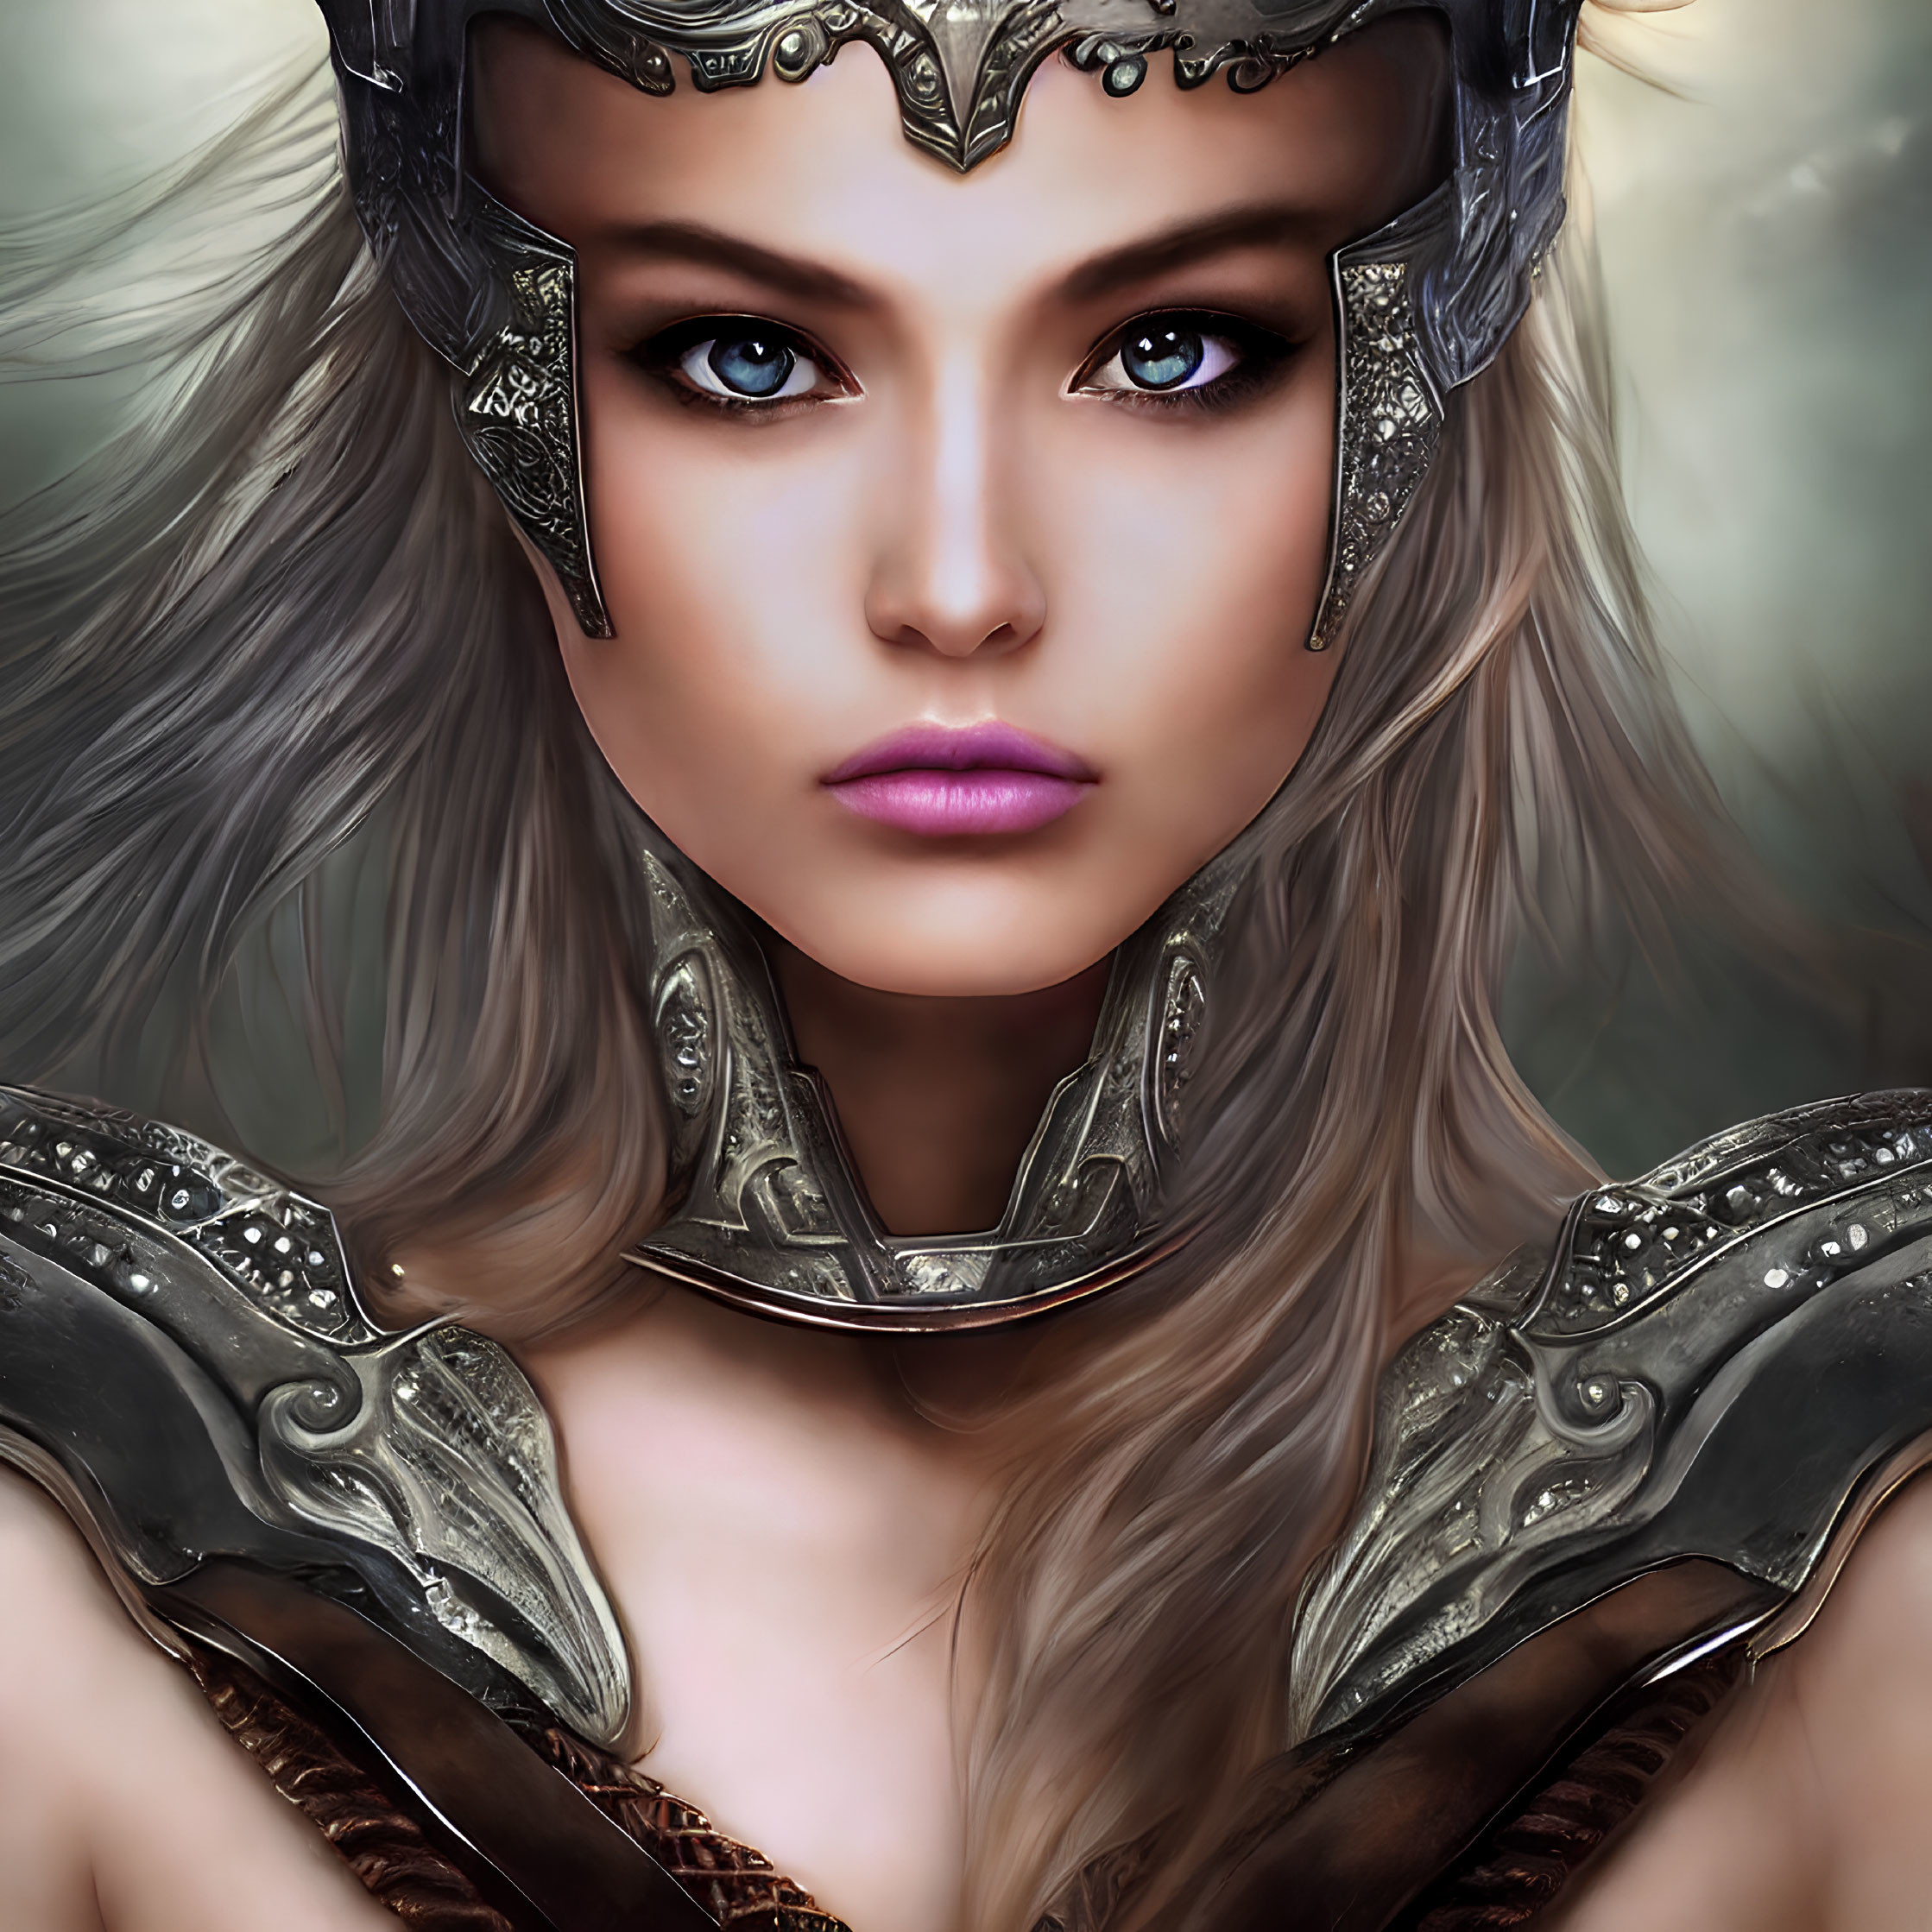 Female warrior portrait: blue-eyed, metal helmet, armor, flowing hair